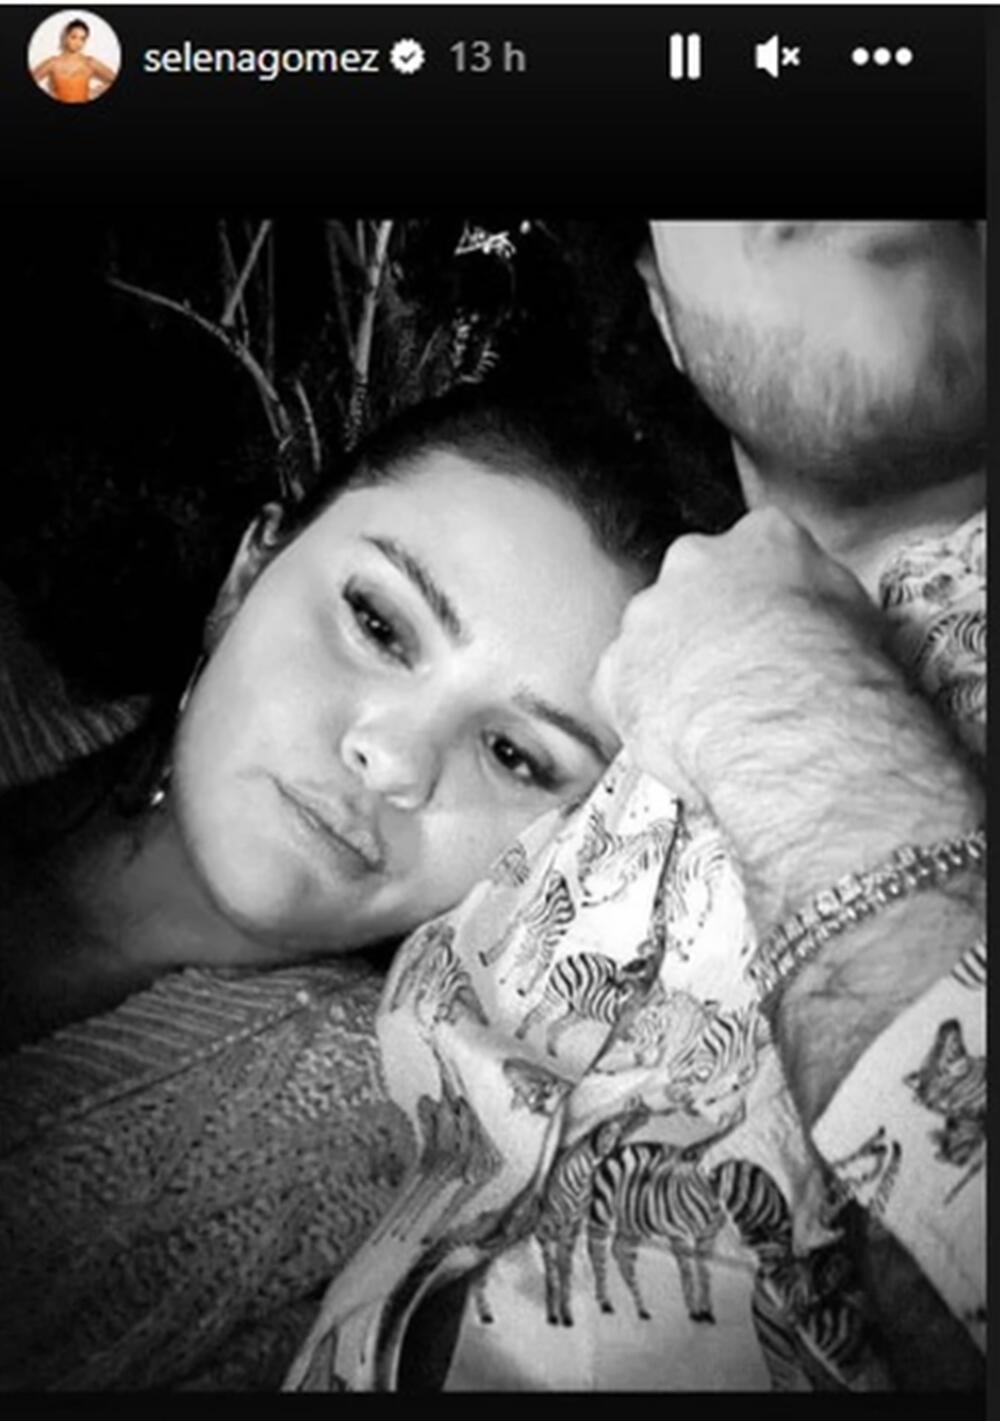 Fotografija sa Benijem koju je Selena Gomez podelila na Instagramu  